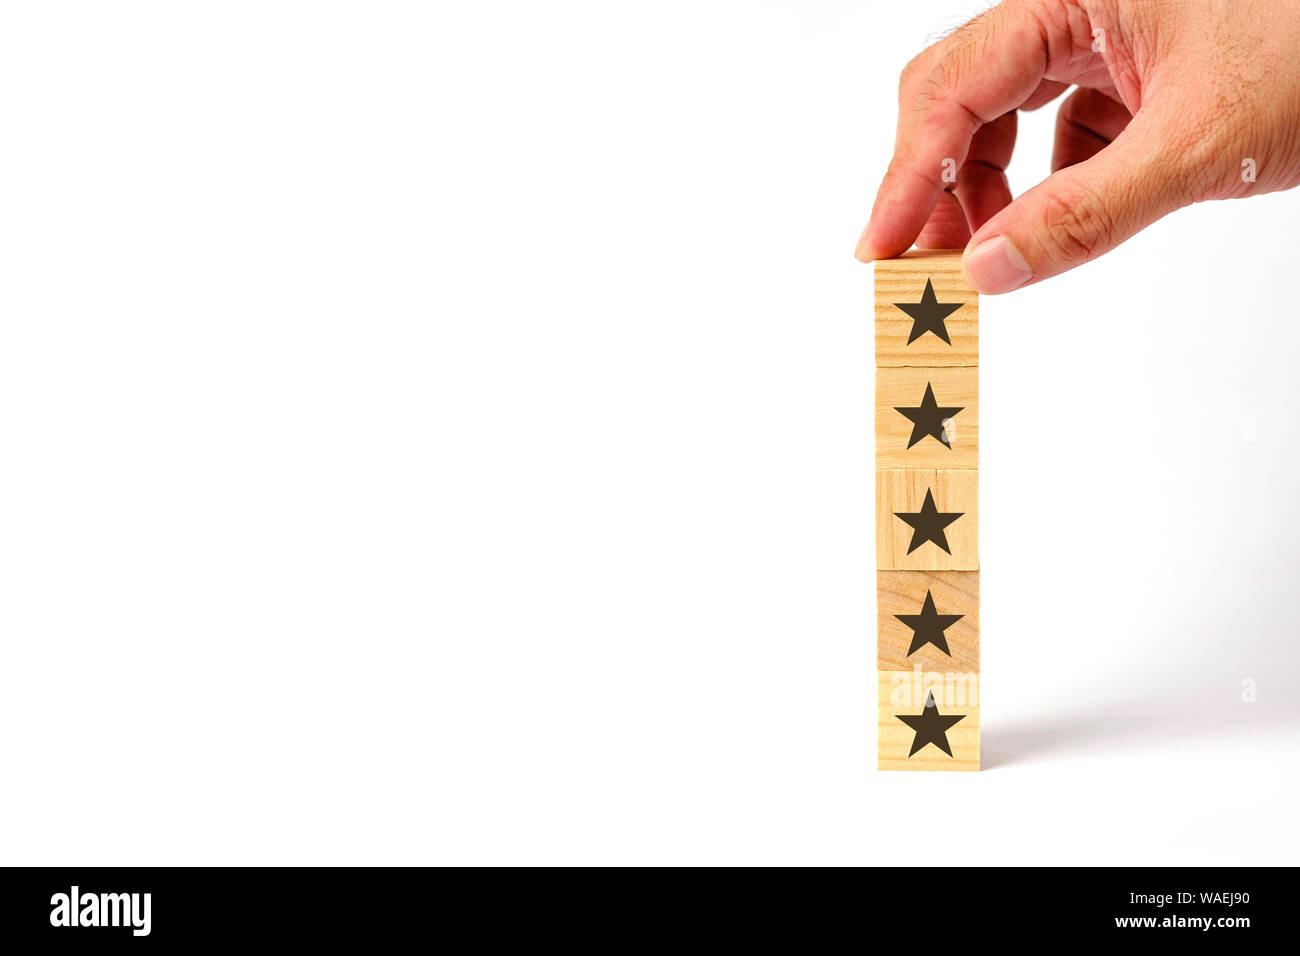 Servicio al Cliente Encuesta de satisfacción y evaluación del concepto de calificación con estrellas. Foto de stock